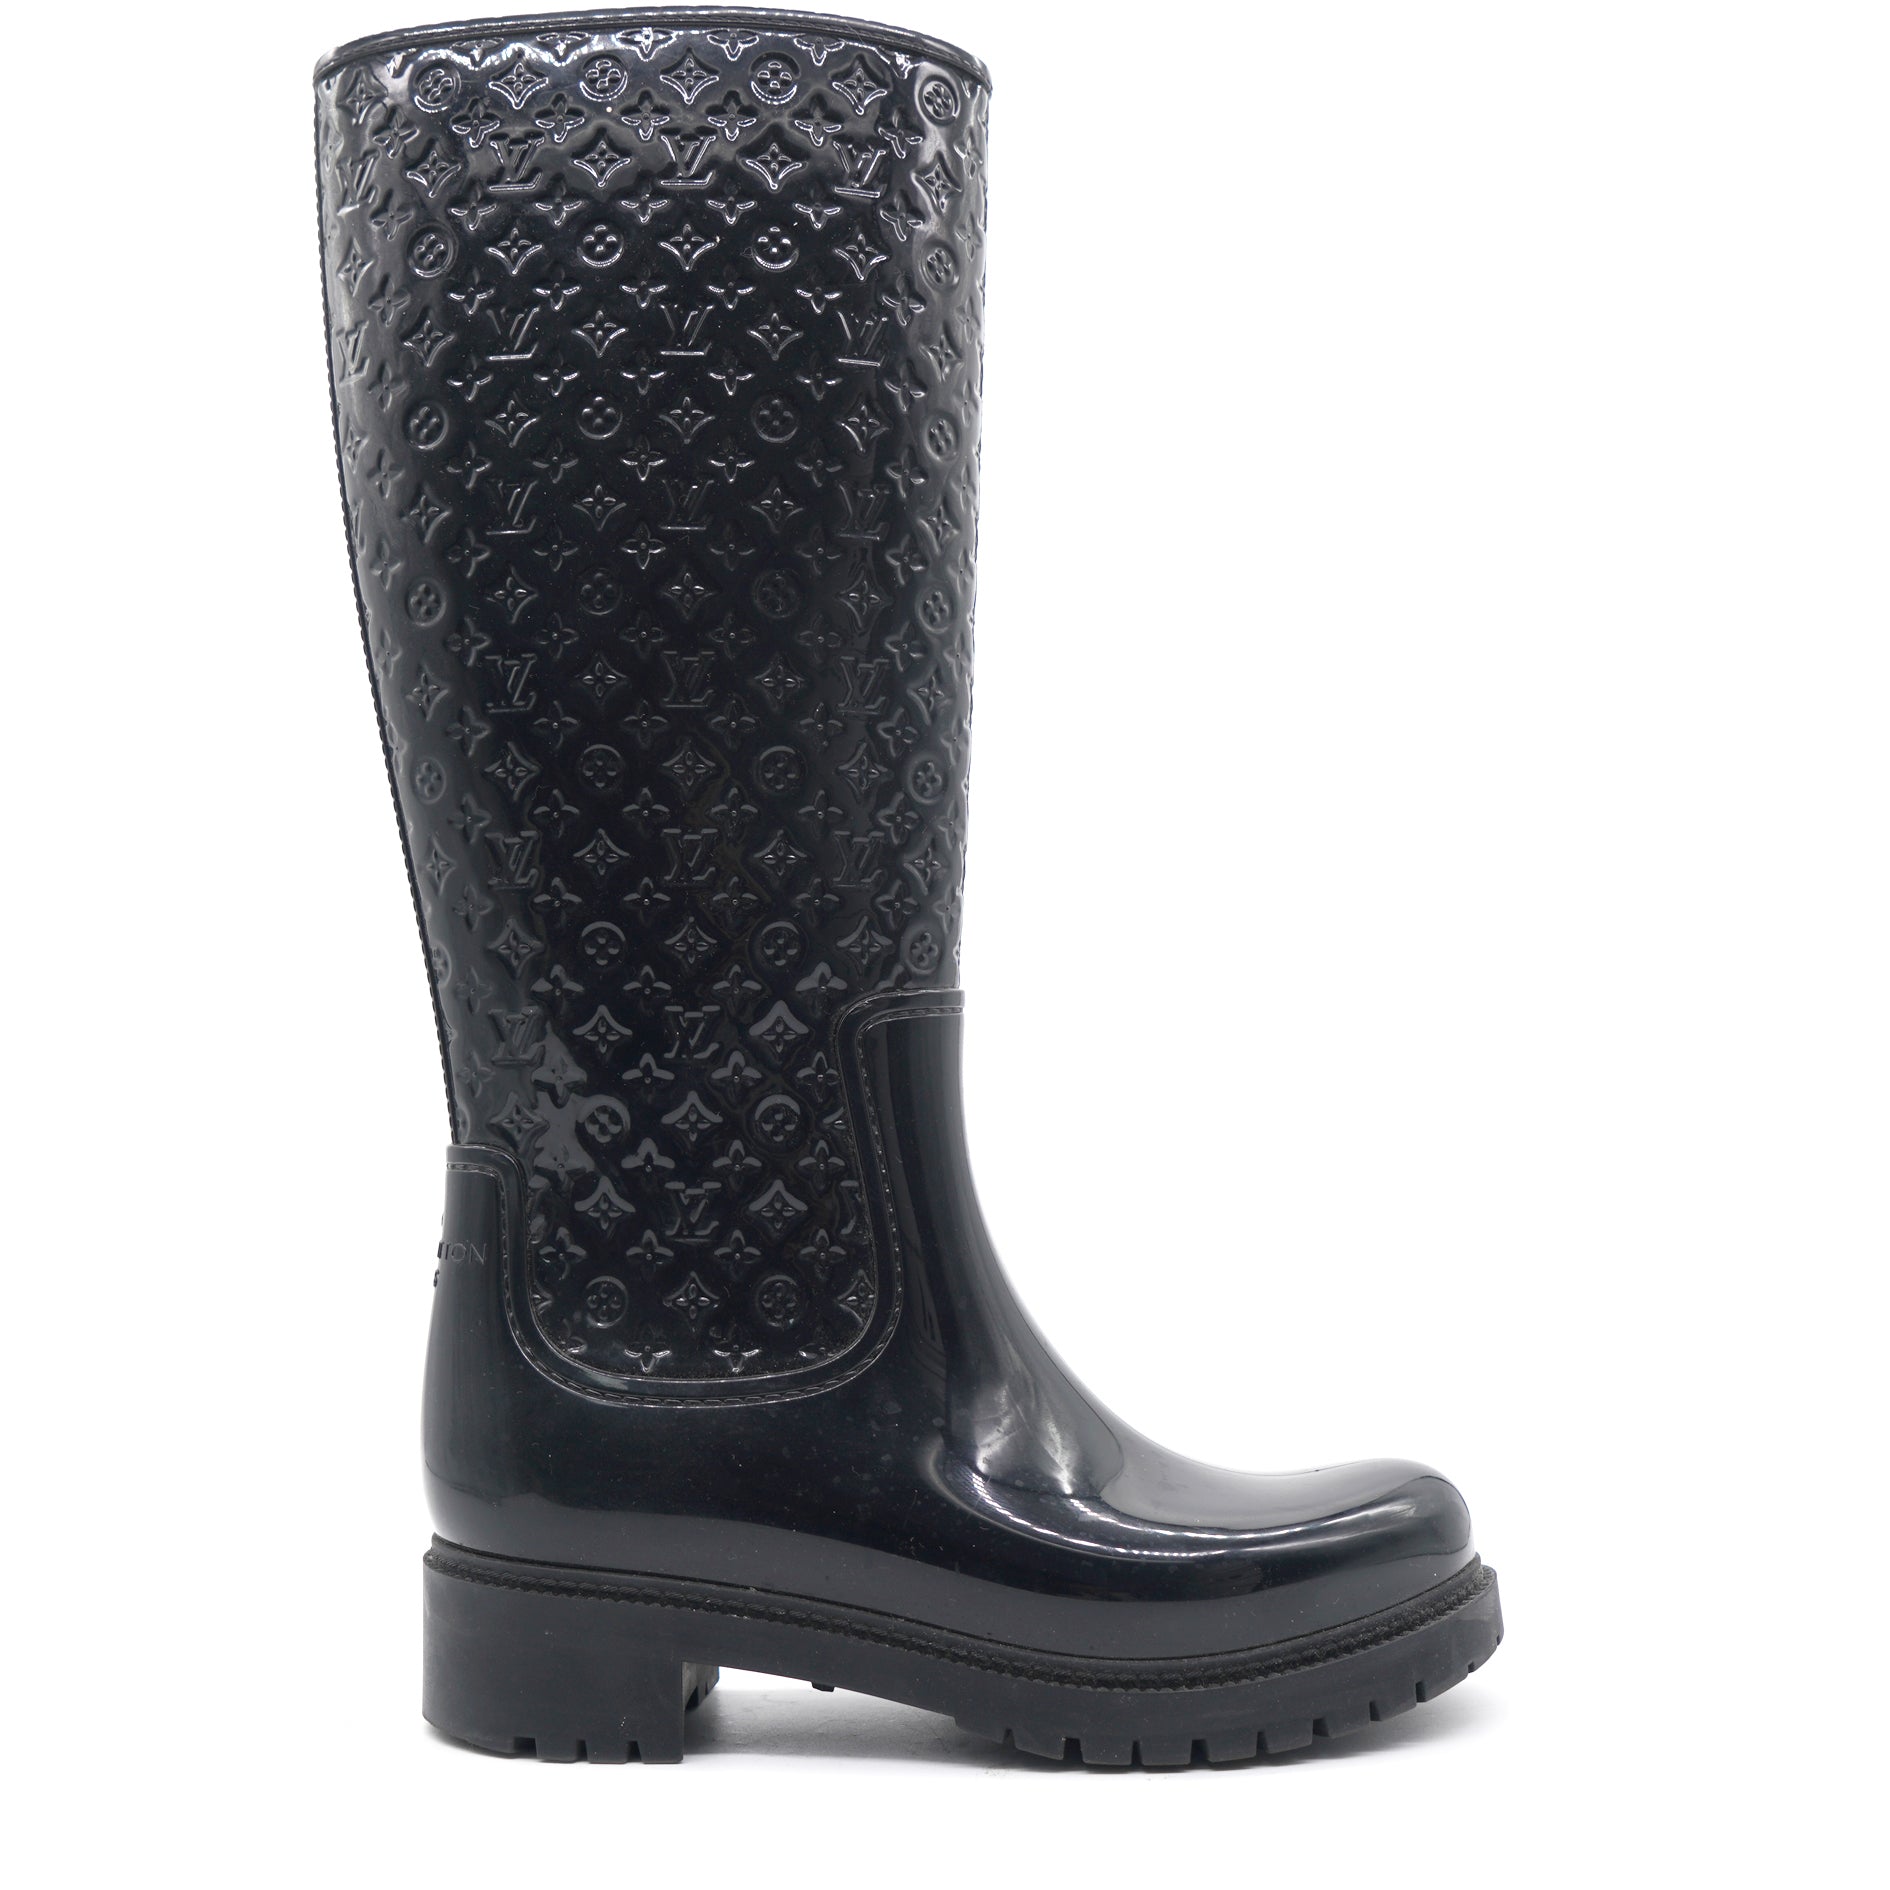 Drops wellington boots Louis Vuitton Black size 38 EU in Rubber - 34364264